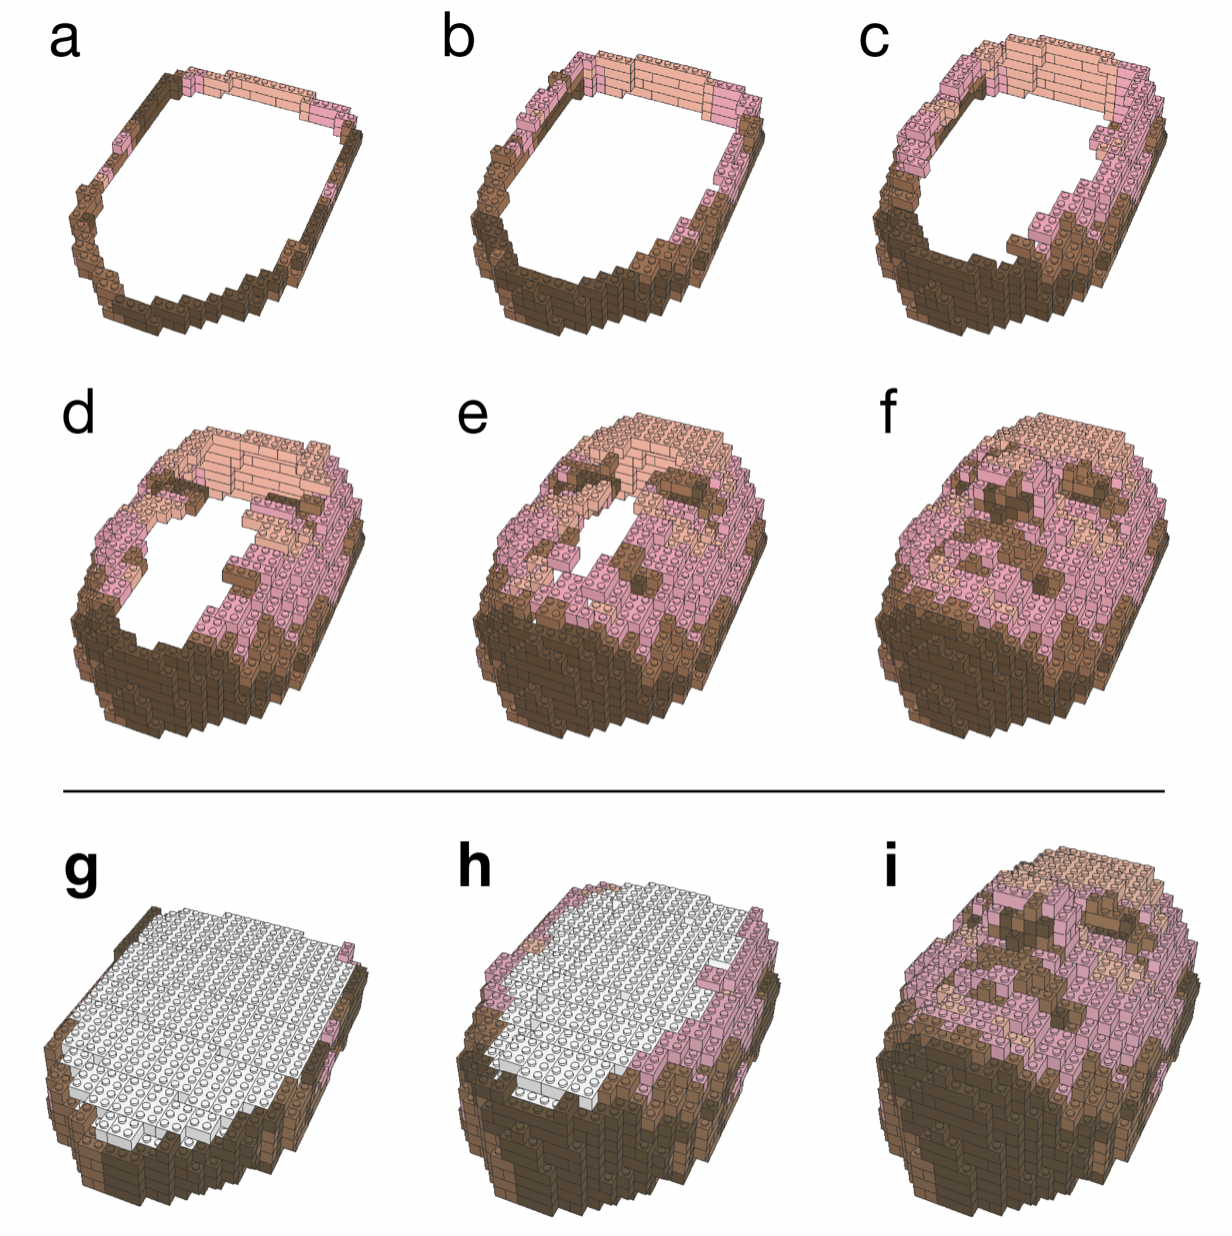 В MIT разработали нейросеть Image2Lego. Она превращает 2D-картинки в 3D-модели из конструктора LEGO 3